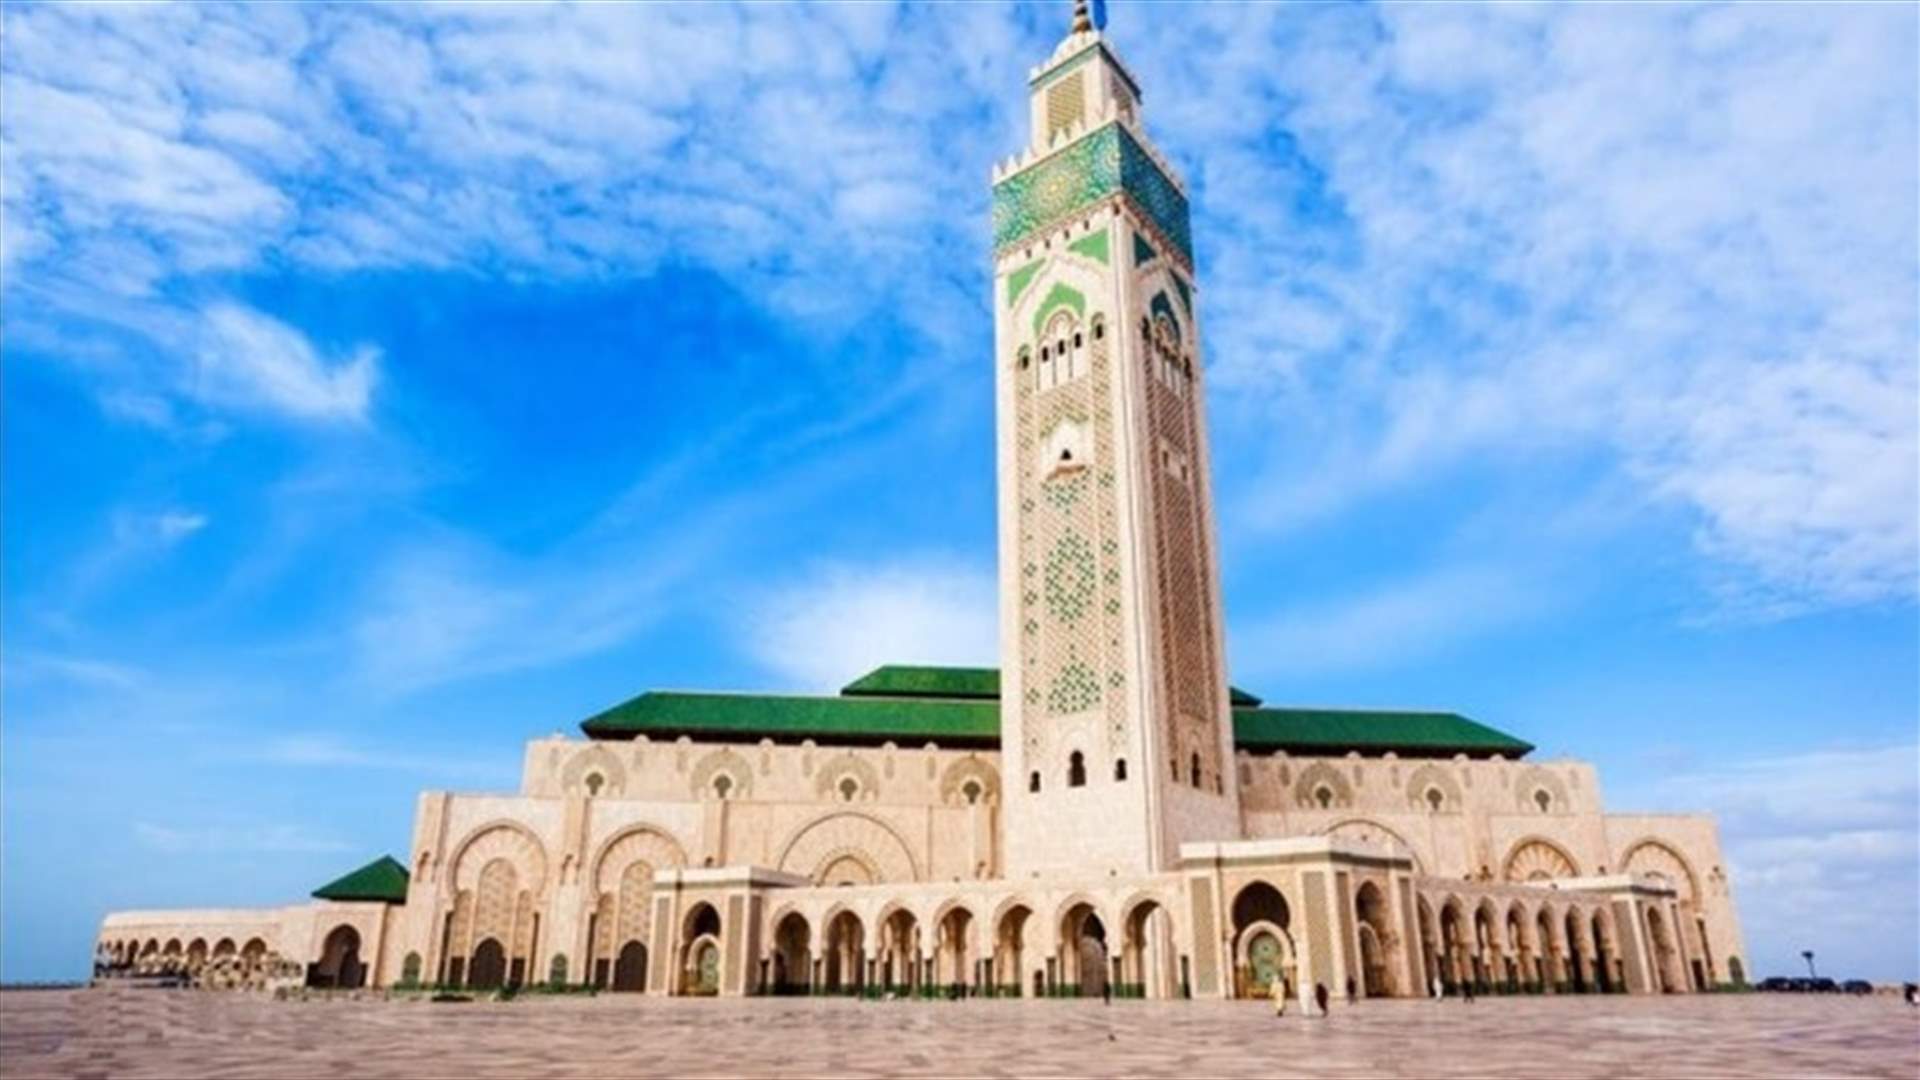 إعادة فتح المساجد تدريجيا في المغرب بعد أشهر من الإغلاق بسبب كوفيد-19